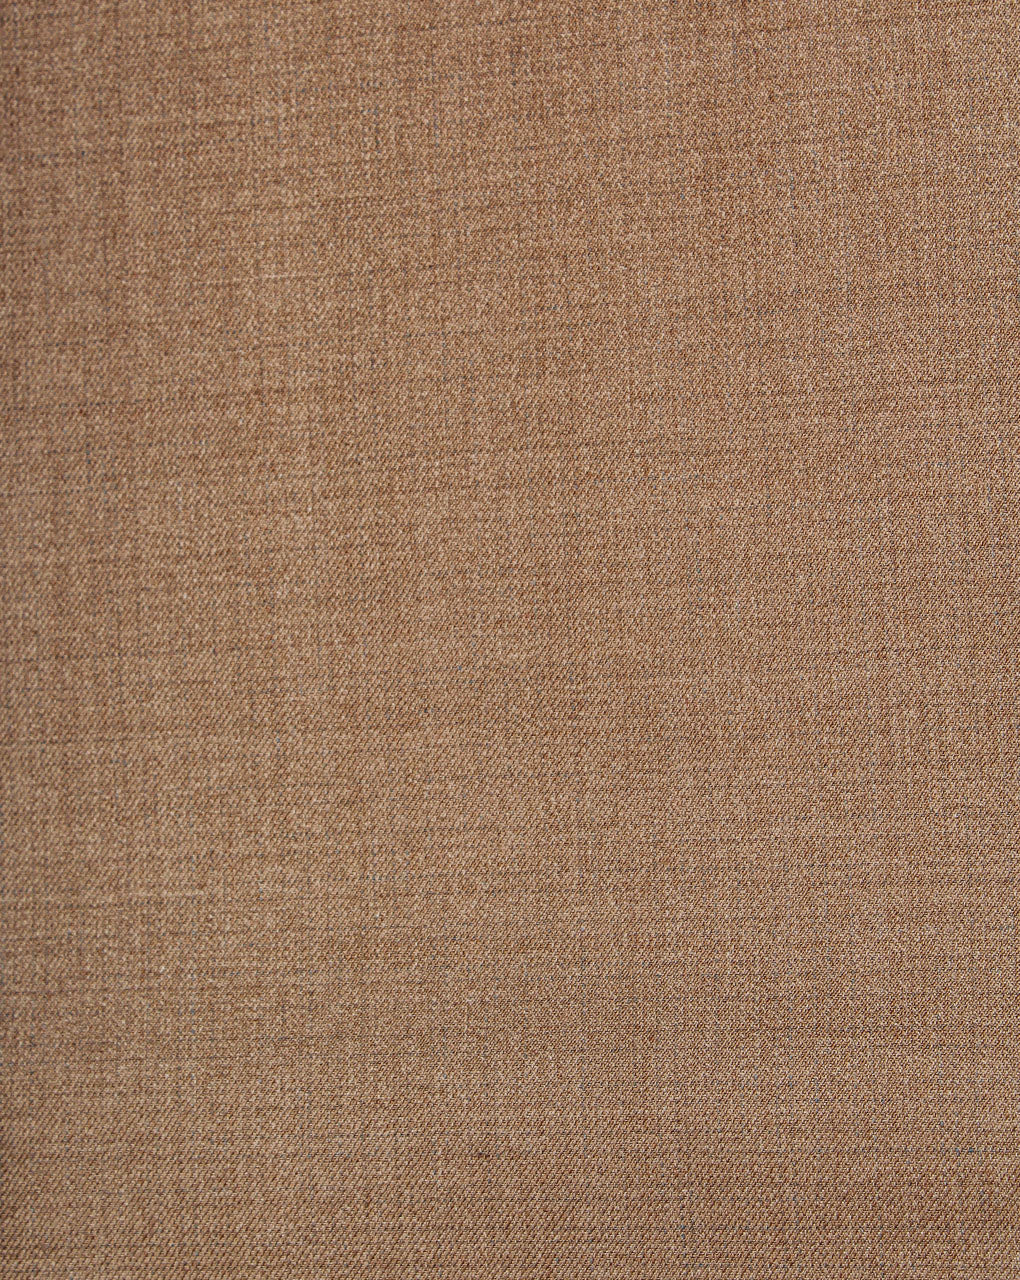 Golden Plain Design 2 Woolen Suiting Fabric